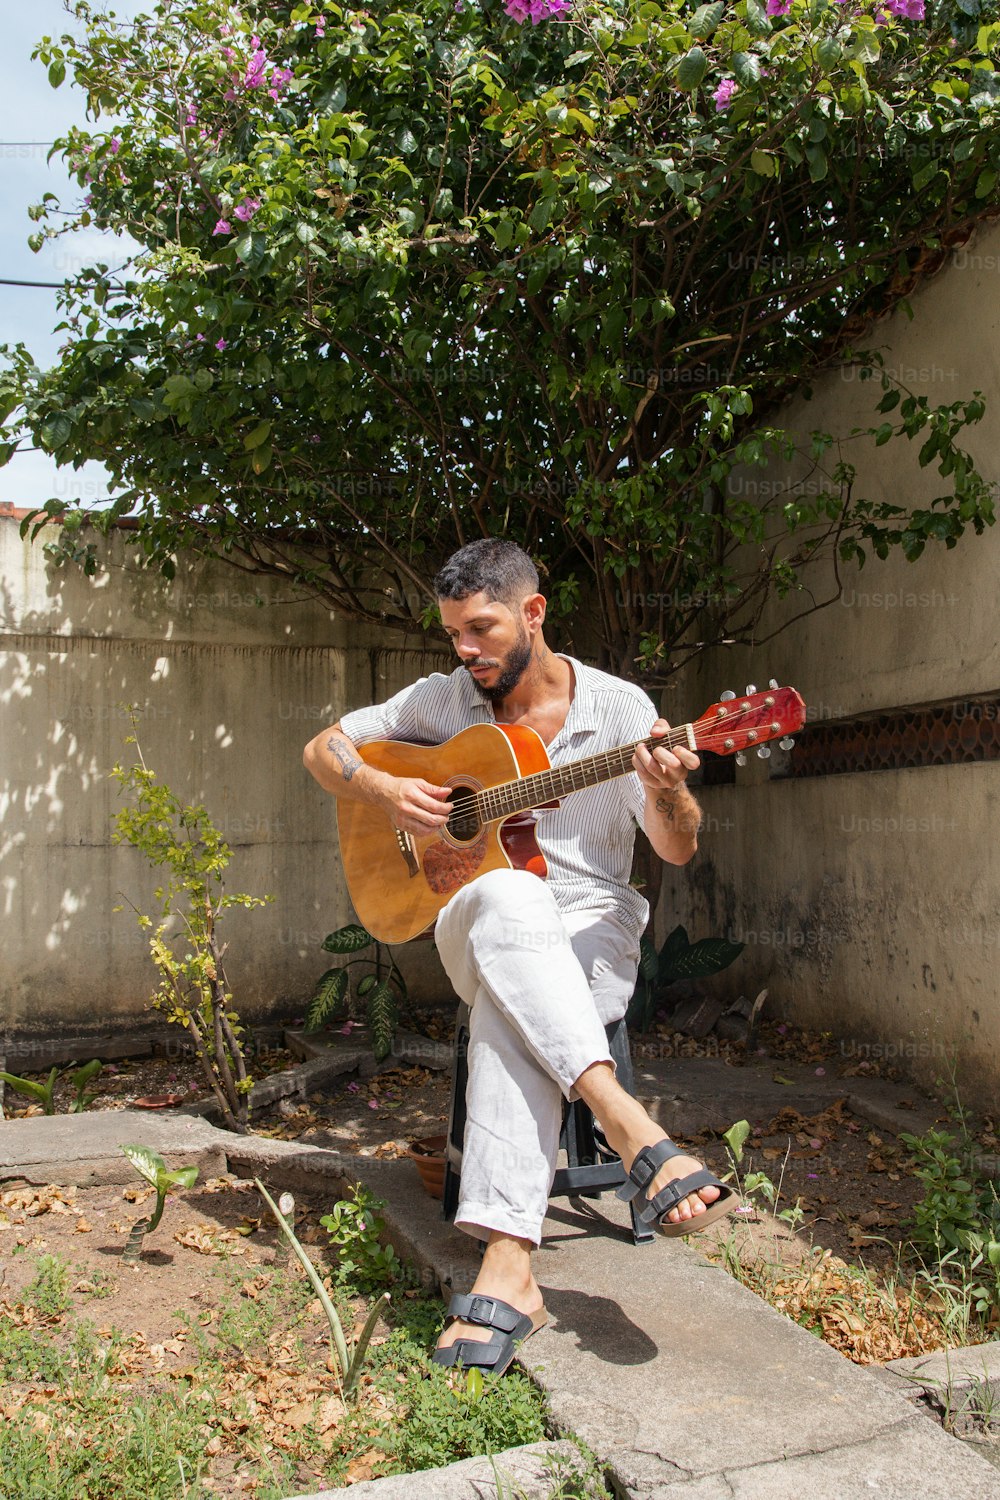 Un hombre sentado en los escalones tocando una guitarra